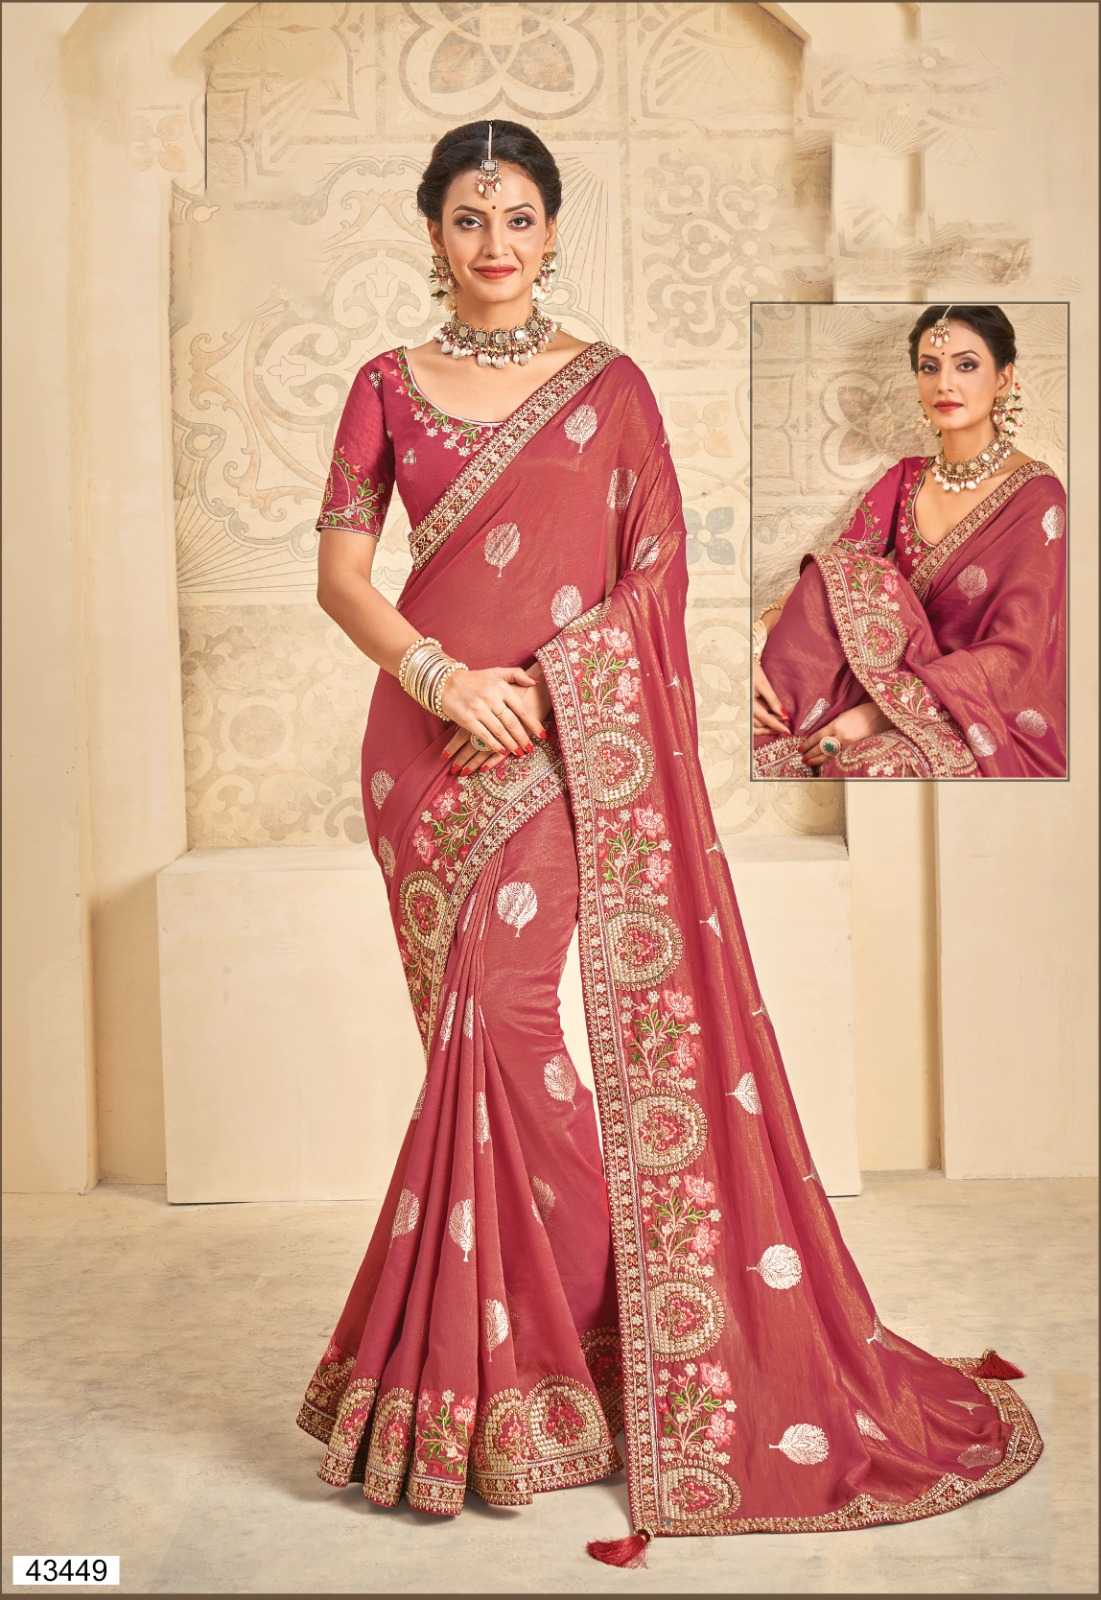 norita 43400 series helisha by mahotsav wedding wear saree with blouse catalog